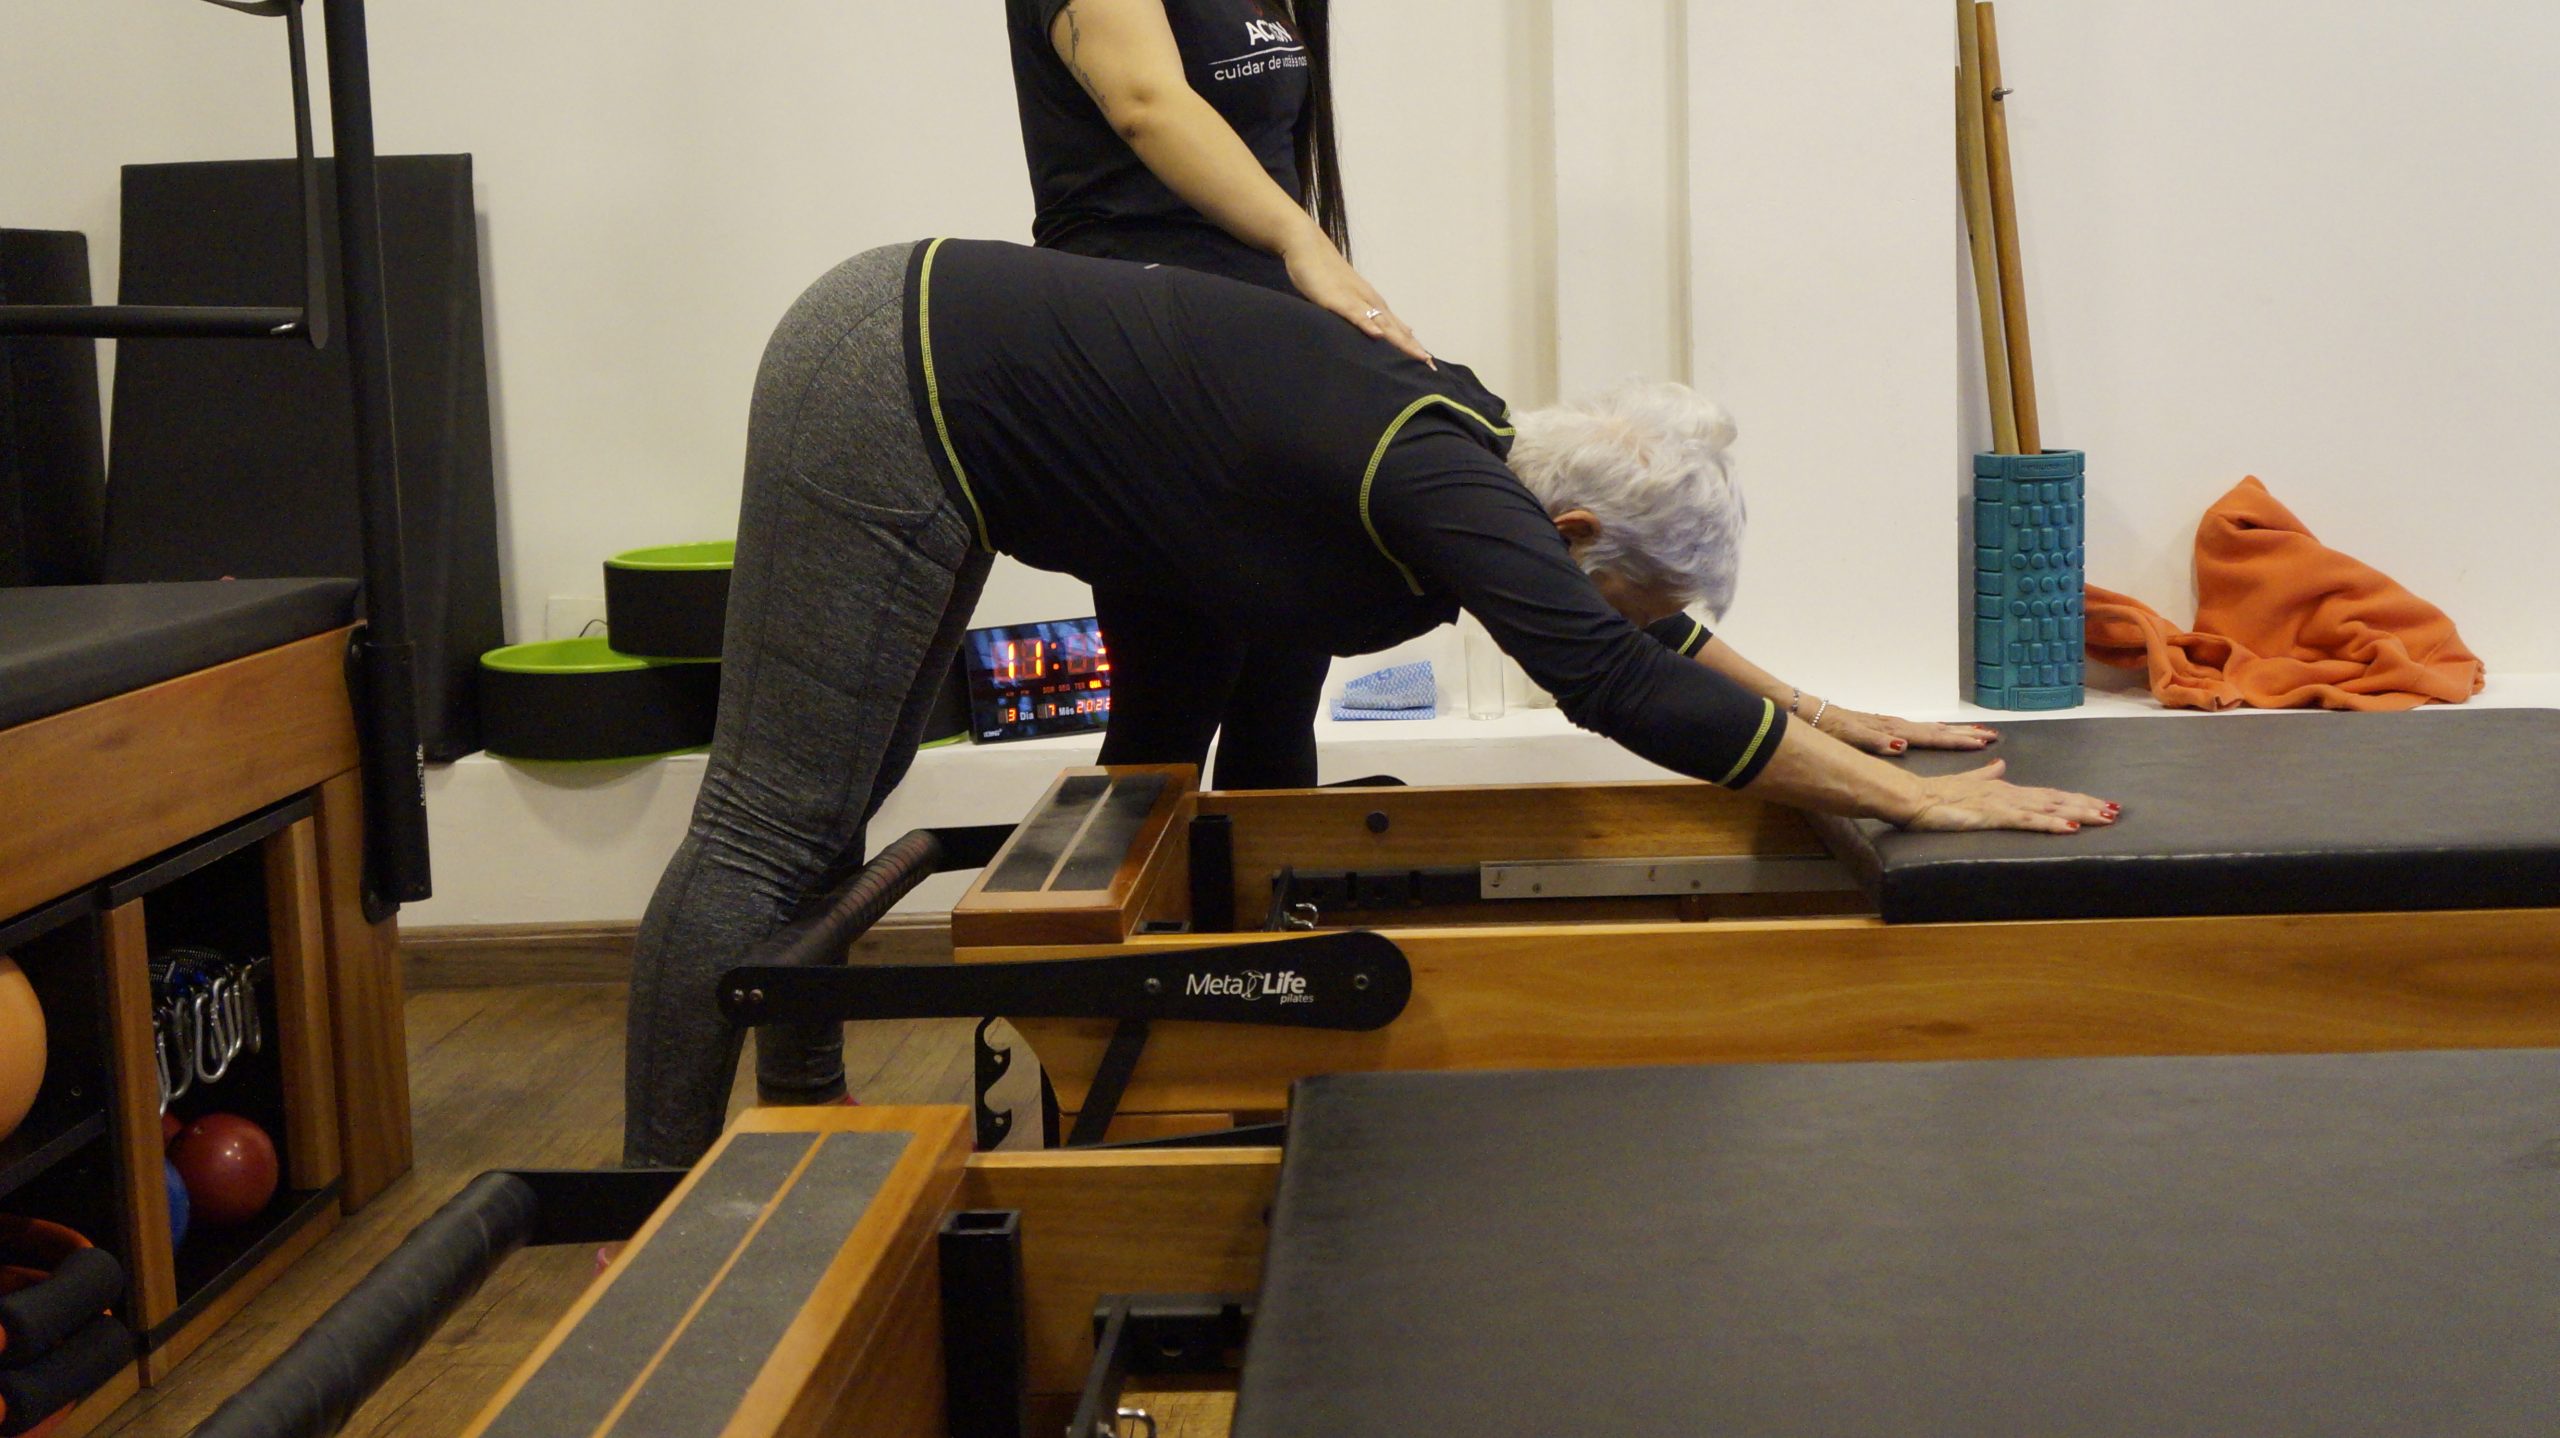 Praticar Pilates ajuda a definir o corpo? - Action 360